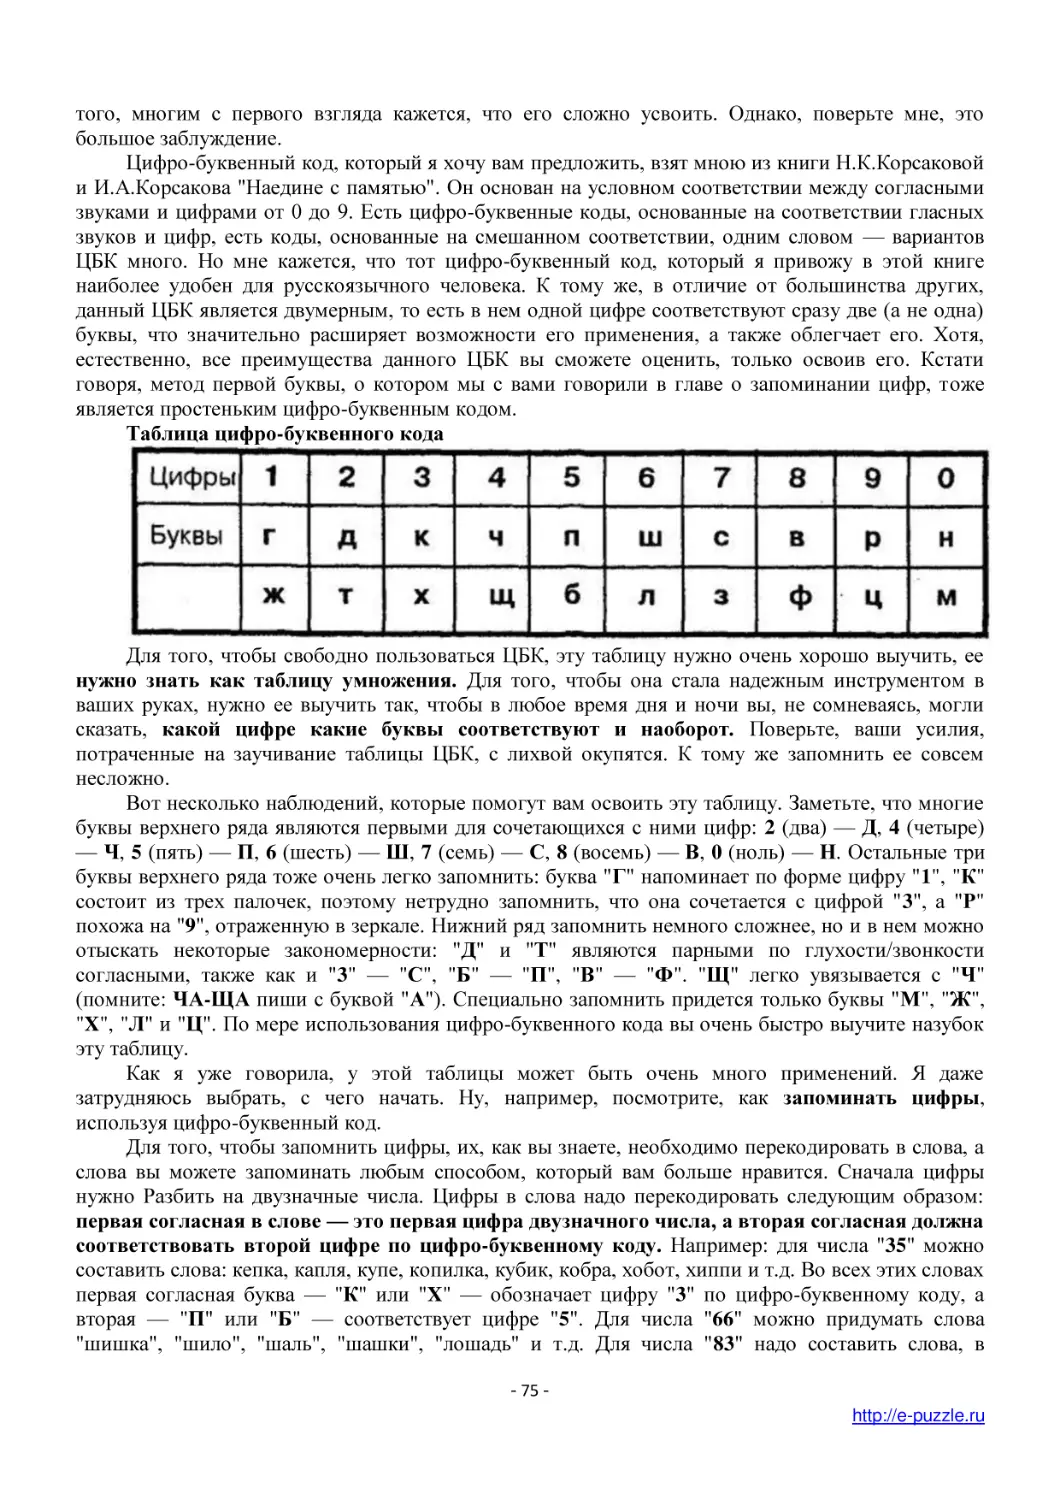 Таблица цифро-буквенного кода